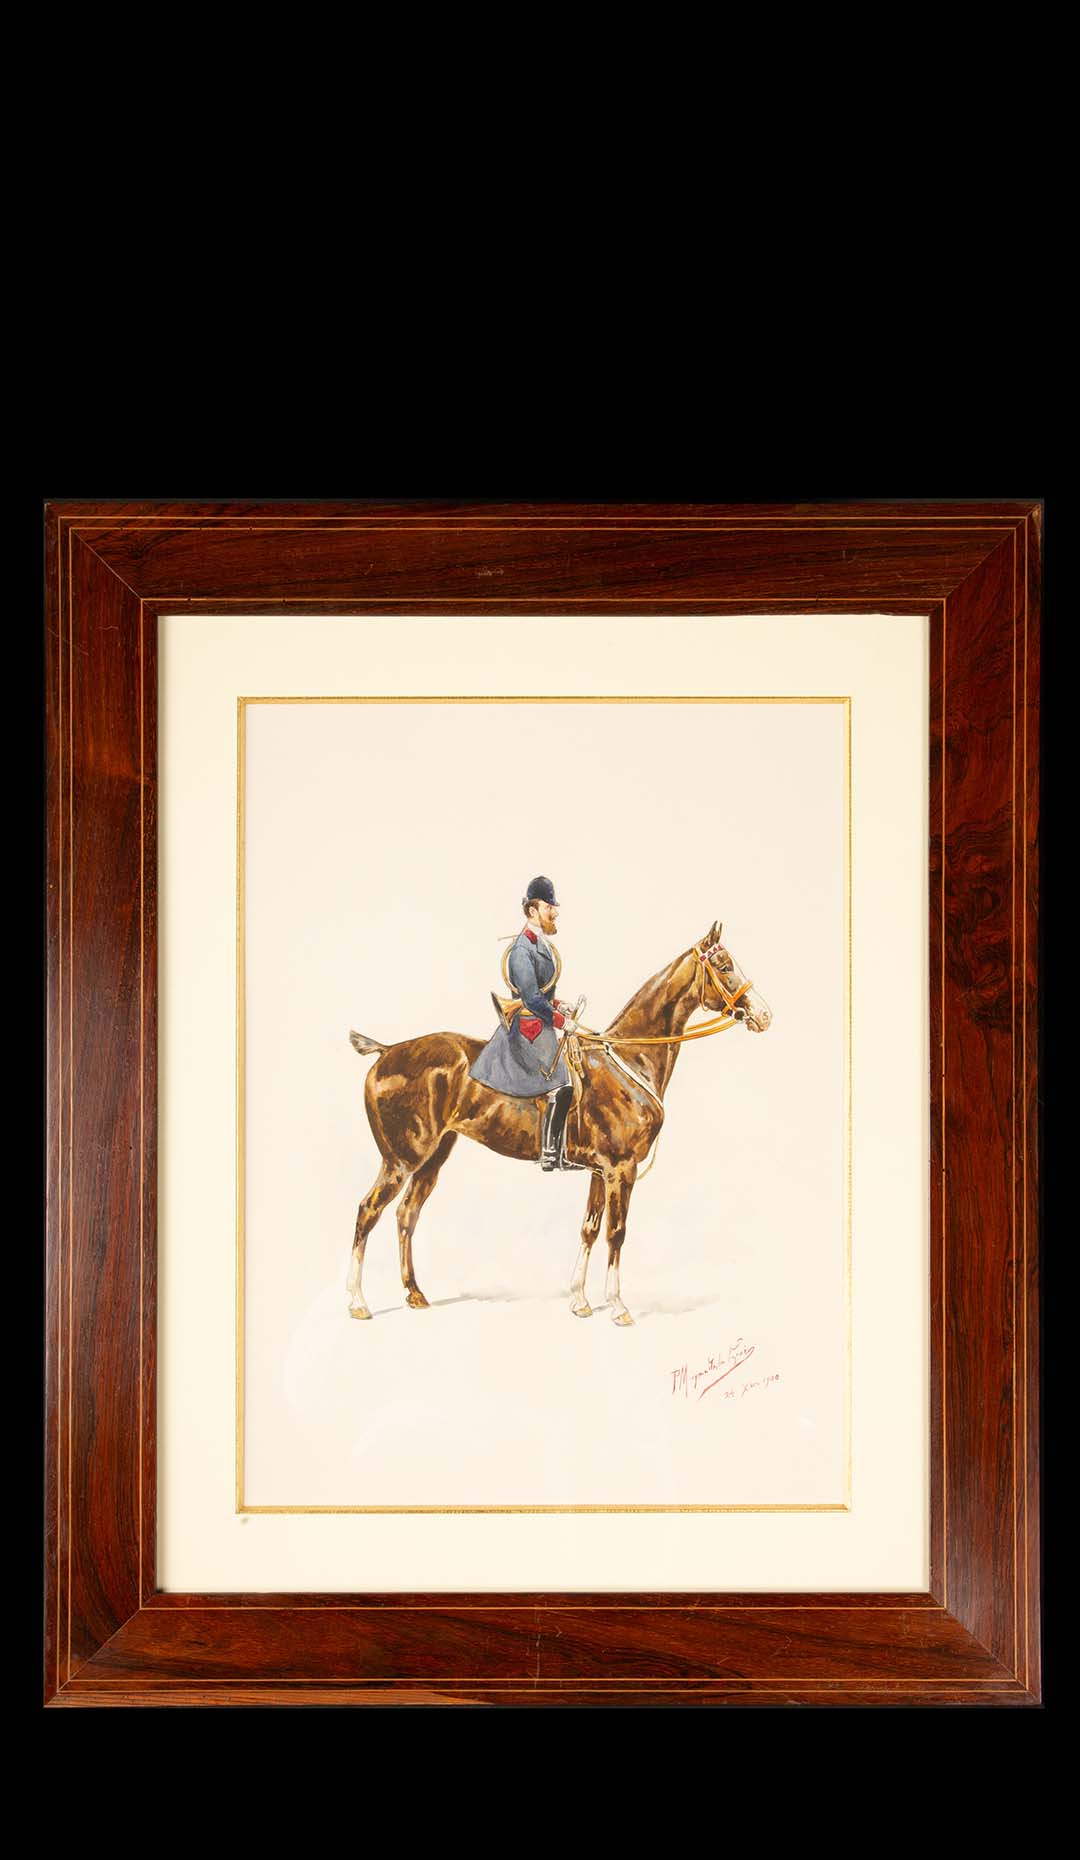 Timeless Equestrian Elegance: Paul Magne De La Croix's 1900 Watercolor